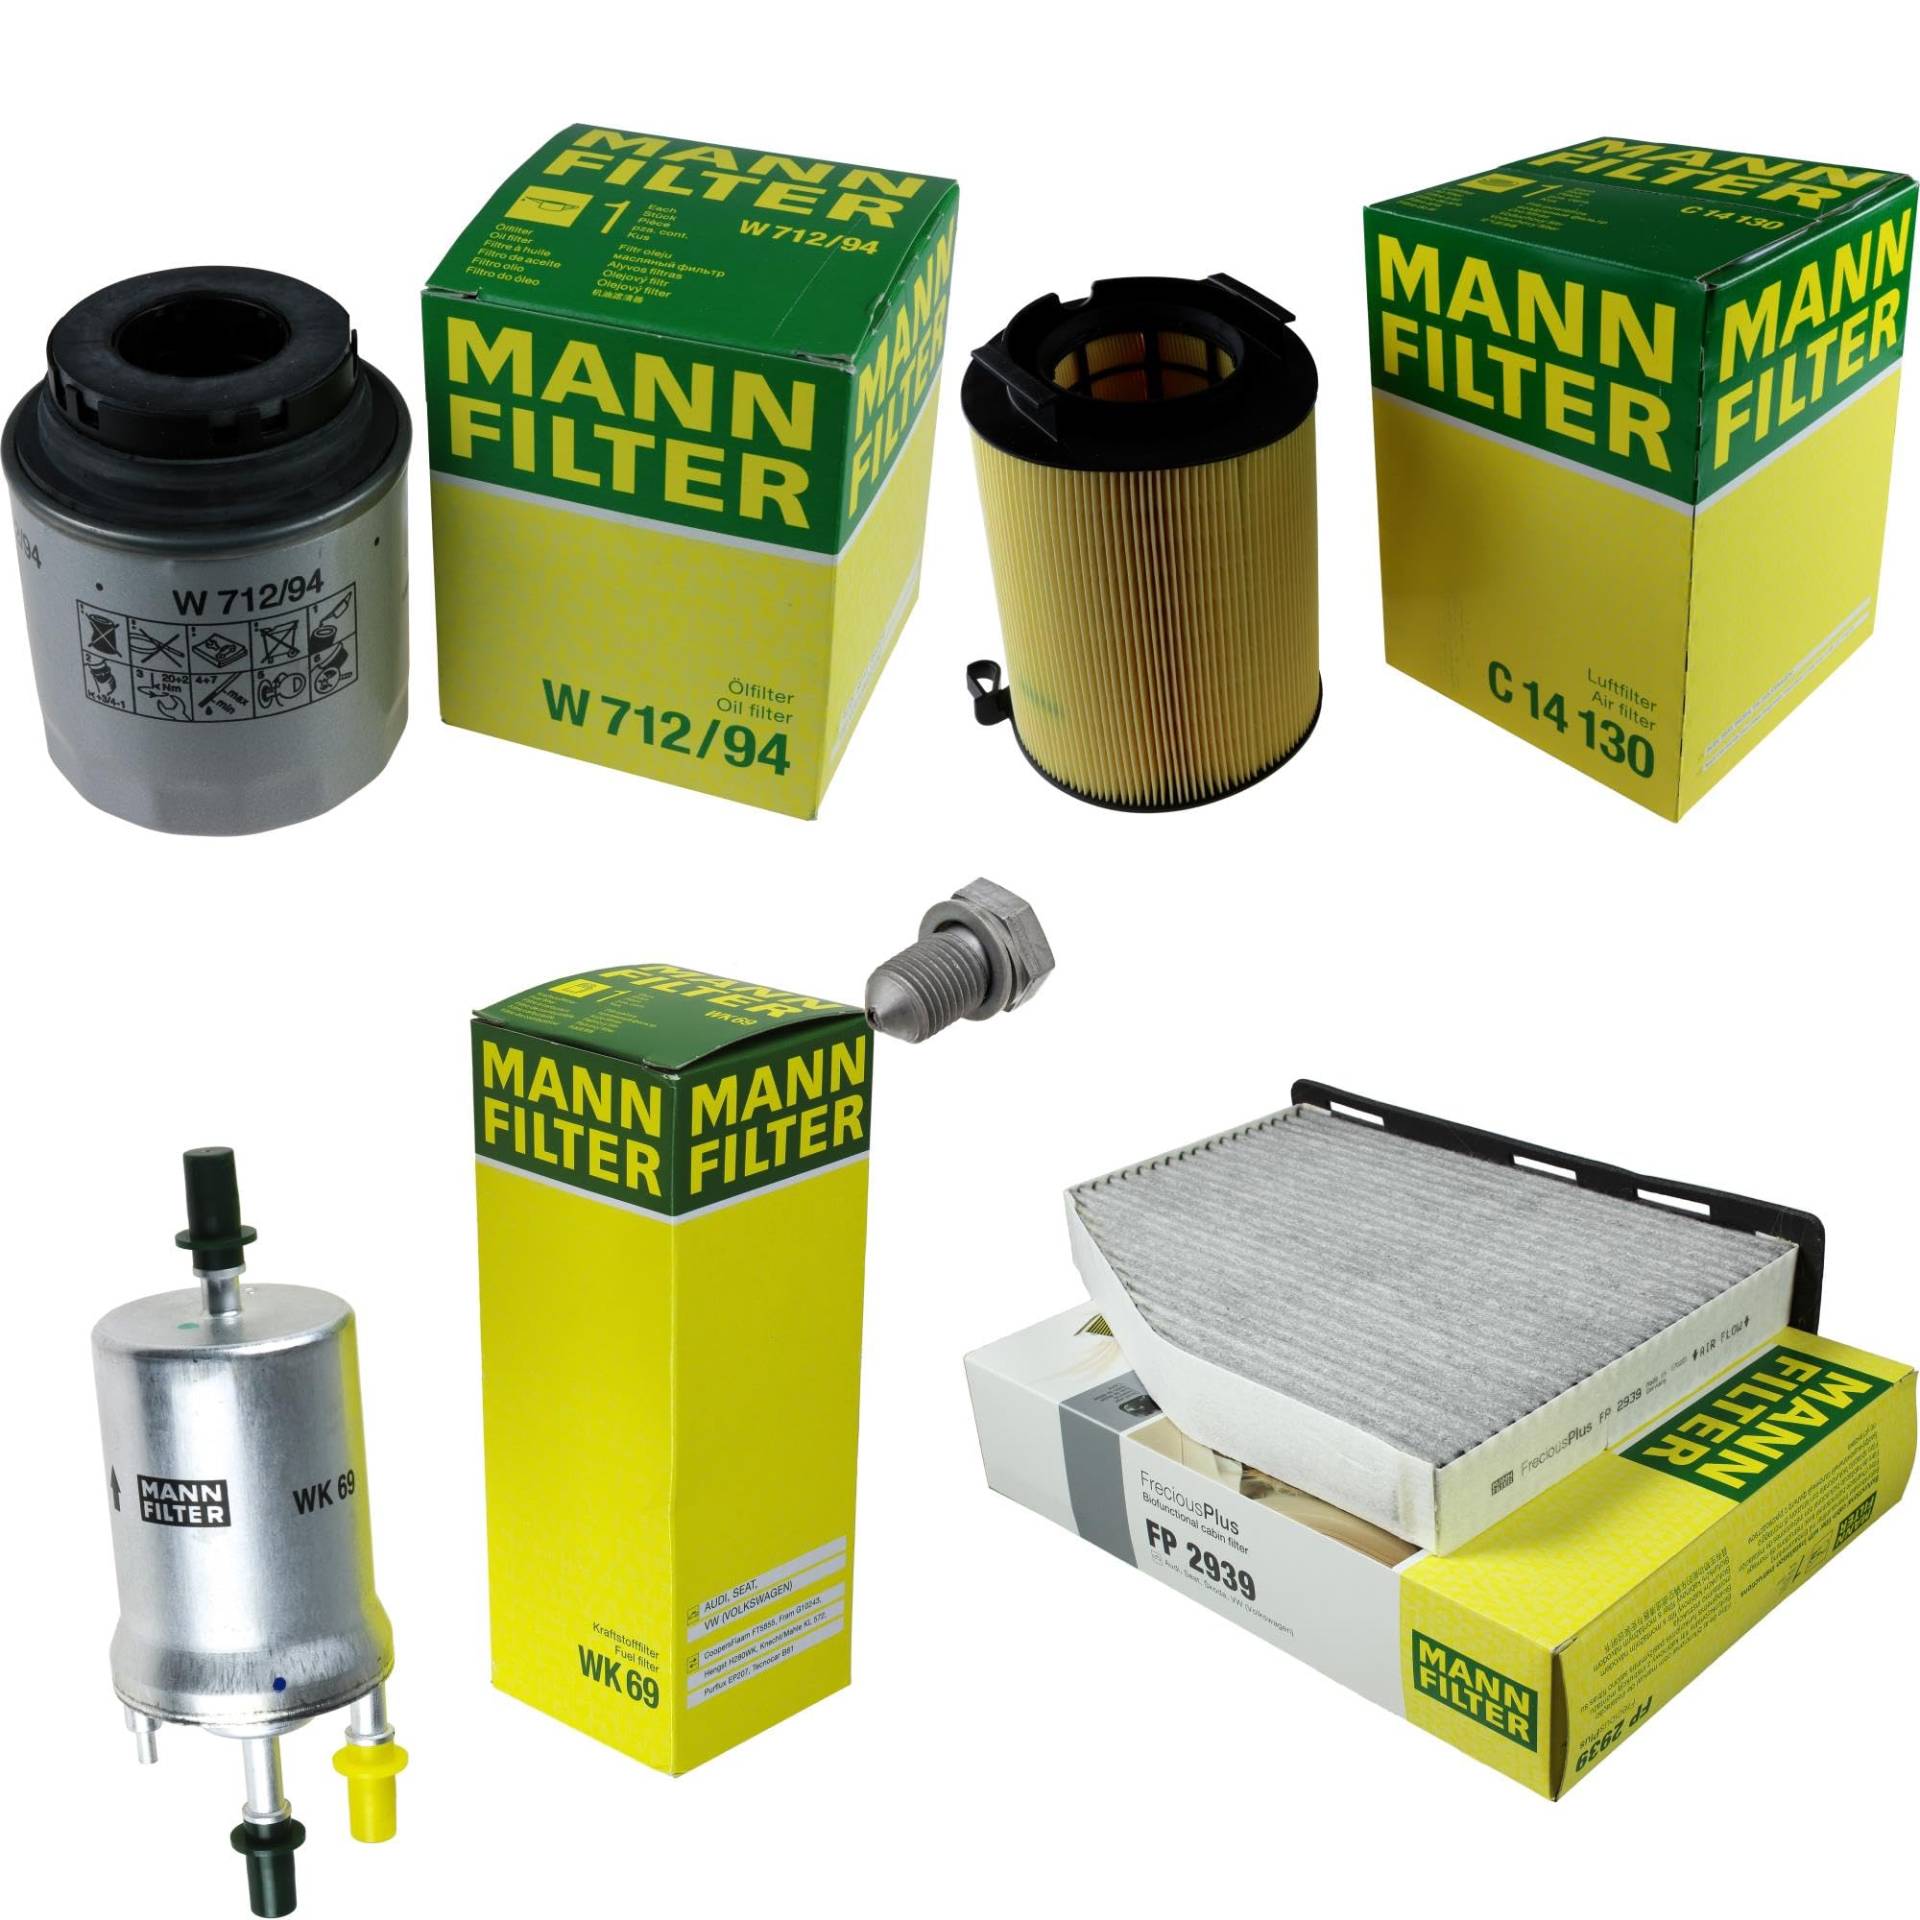 EISENFELS Filter Set Inspektionspaket erstellt mit MANN-FILTER Ölfilter W 712/94, Luftfilter C 14 130, Kraftstofffilter WK 69, Innenraumfilter FP 2939, Verschlussschraube von EISENFELS